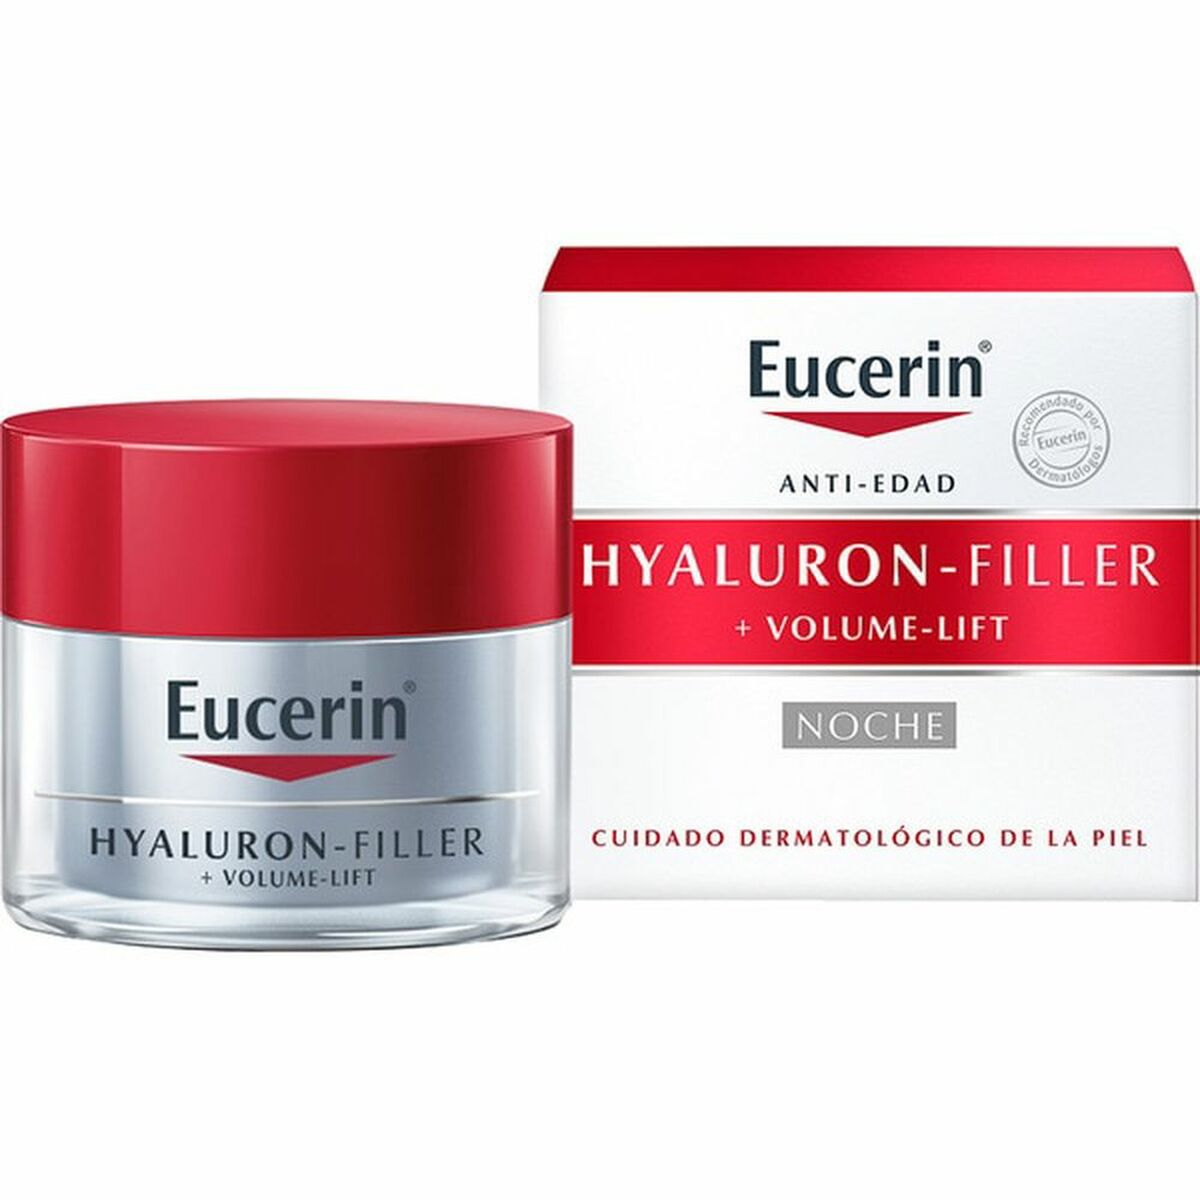 Anti-Age Natcreme Eucerin Hyaluron Filler 50 ml